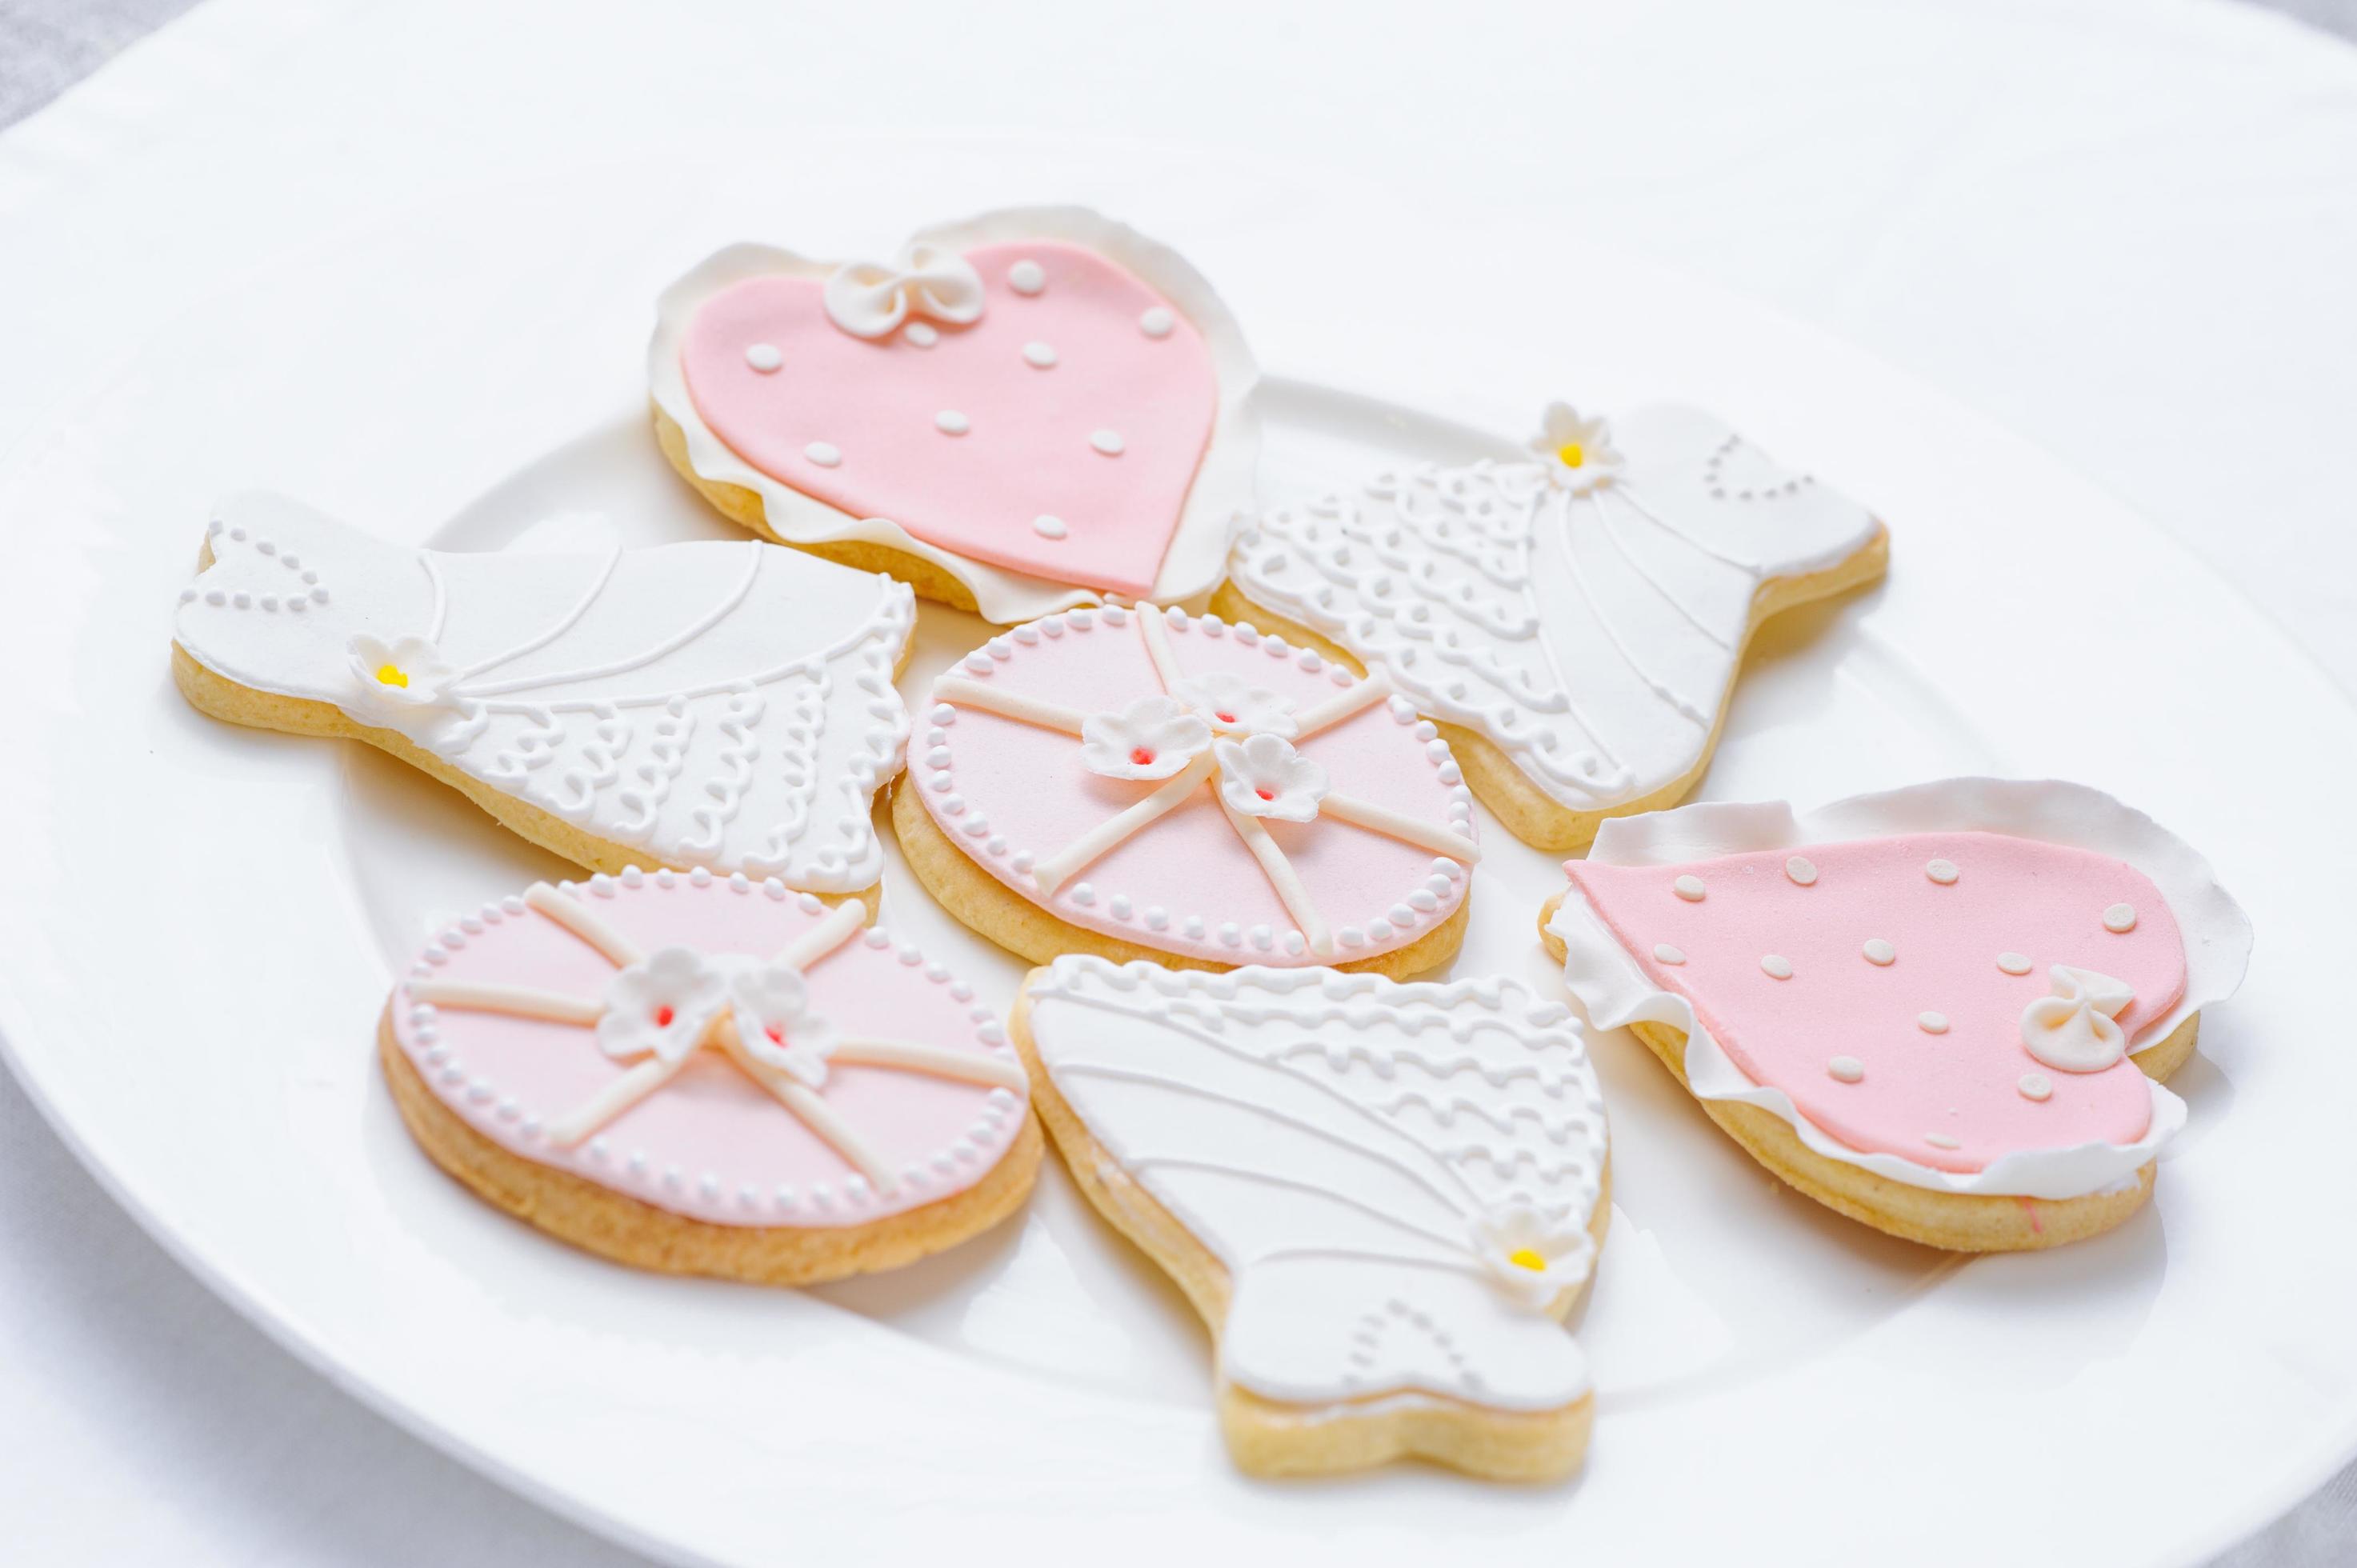 beaucoup de biscuits roses sur une assiette blanche photo